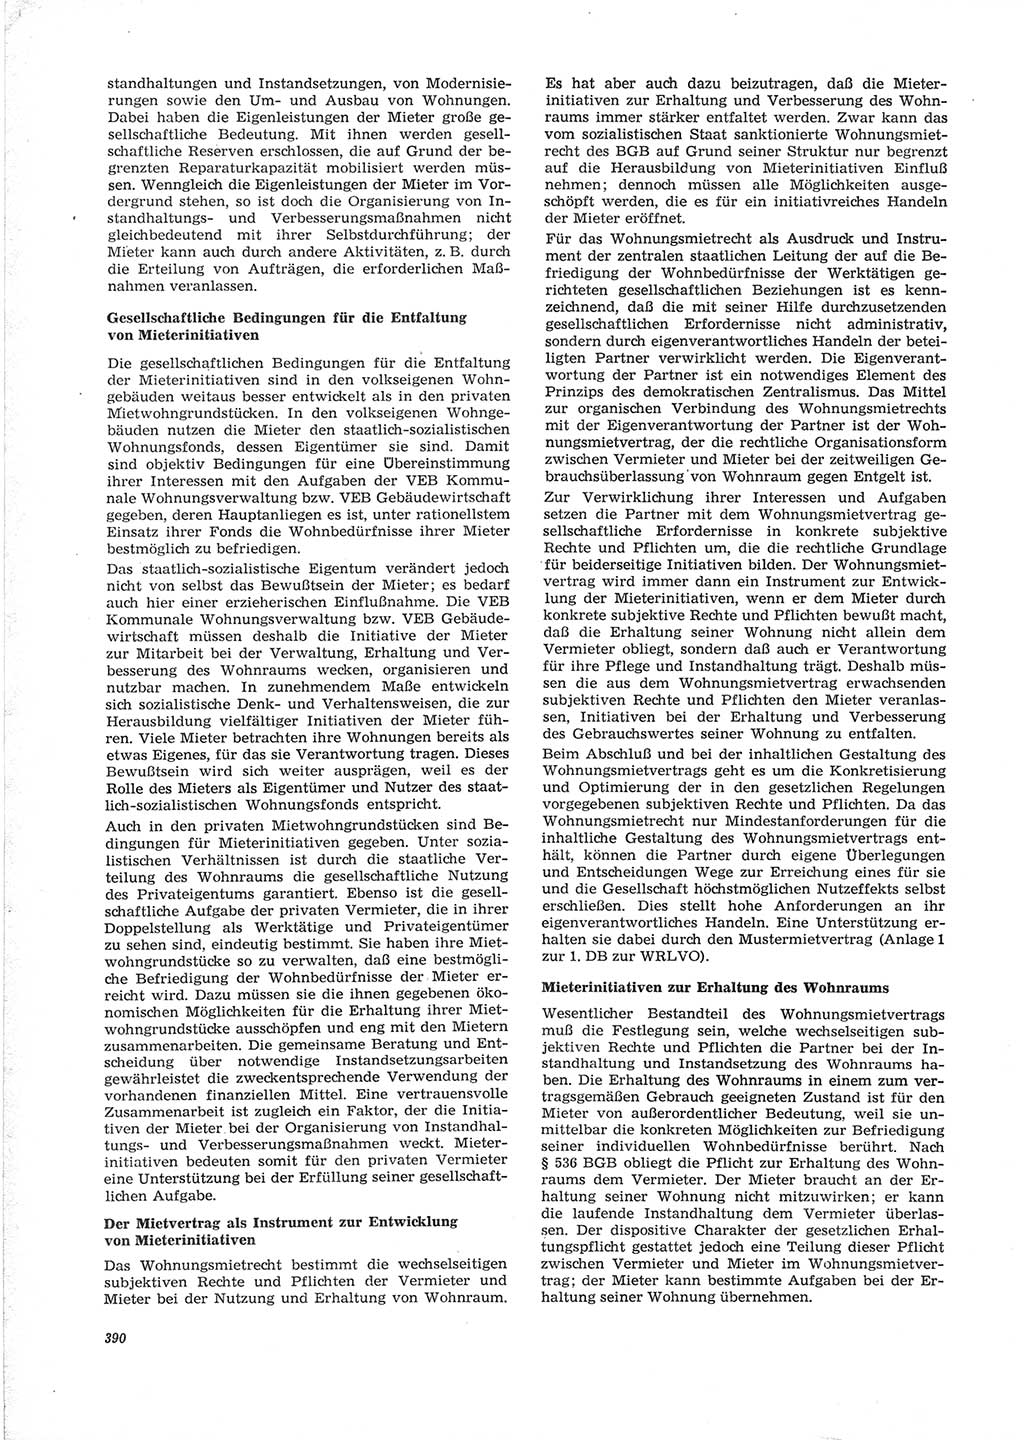 Neue Justiz (NJ), Zeitschrift für Recht und Rechtswissenschaft [Deutsche Demokratische Republik (DDR)], 28. Jahrgang 1974, Seite 390 (NJ DDR 1974, S. 390)